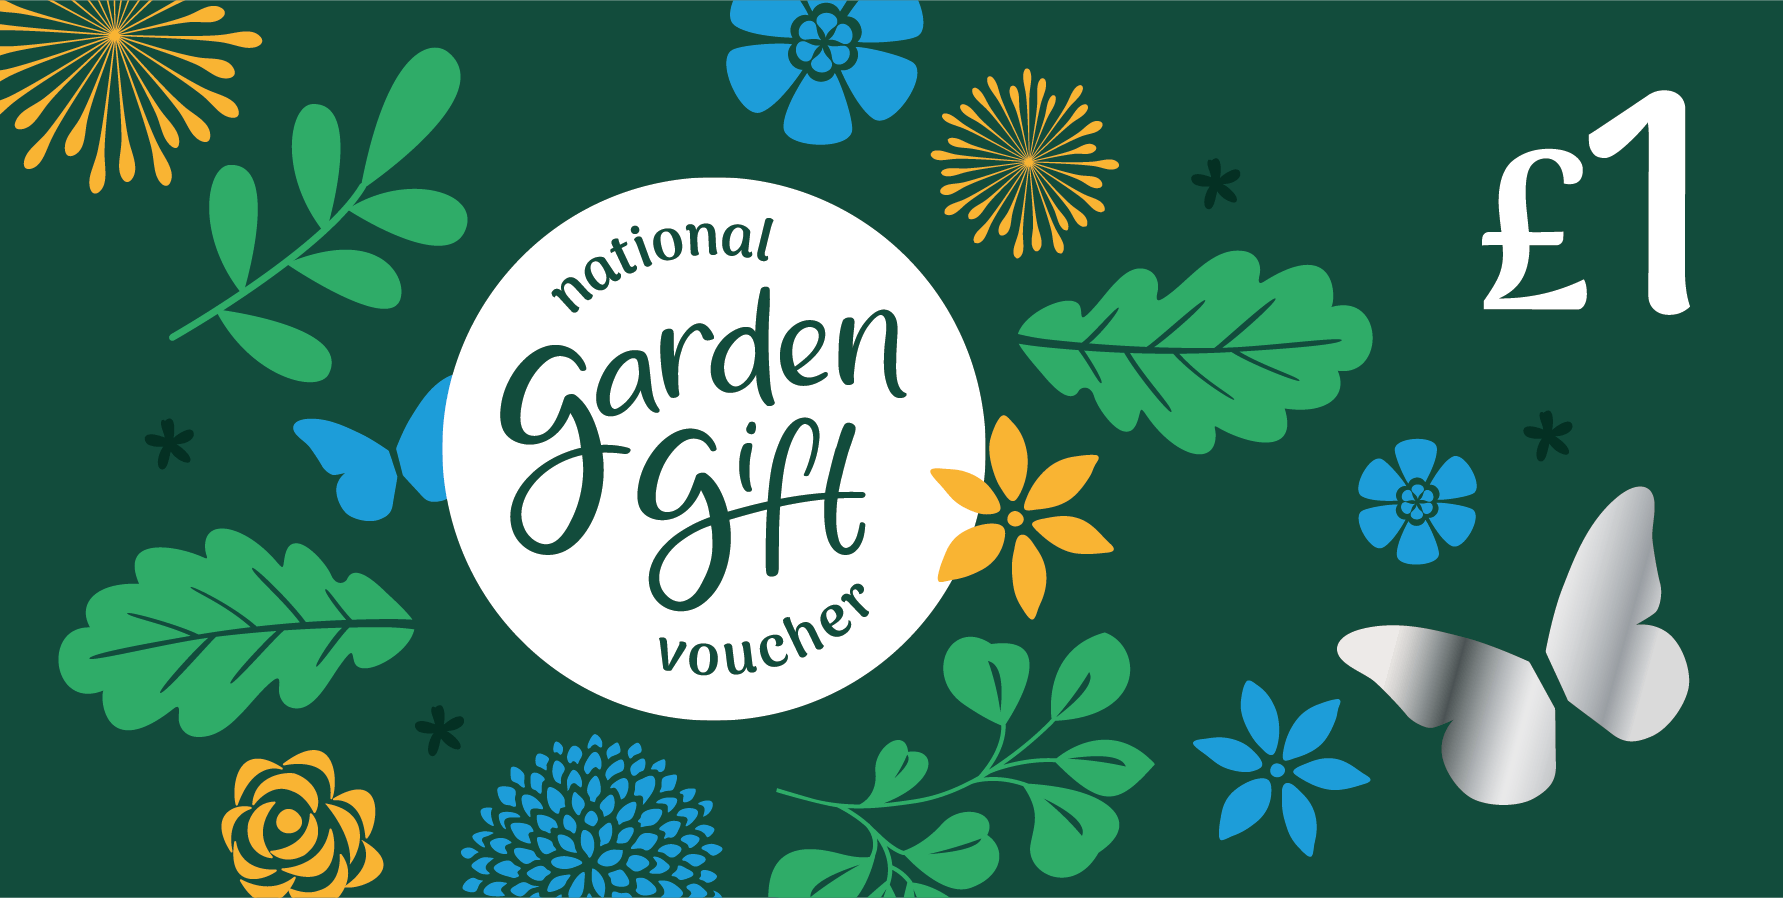 Hta 1 National Garden Gift Voucher Burleydam Garden Centre